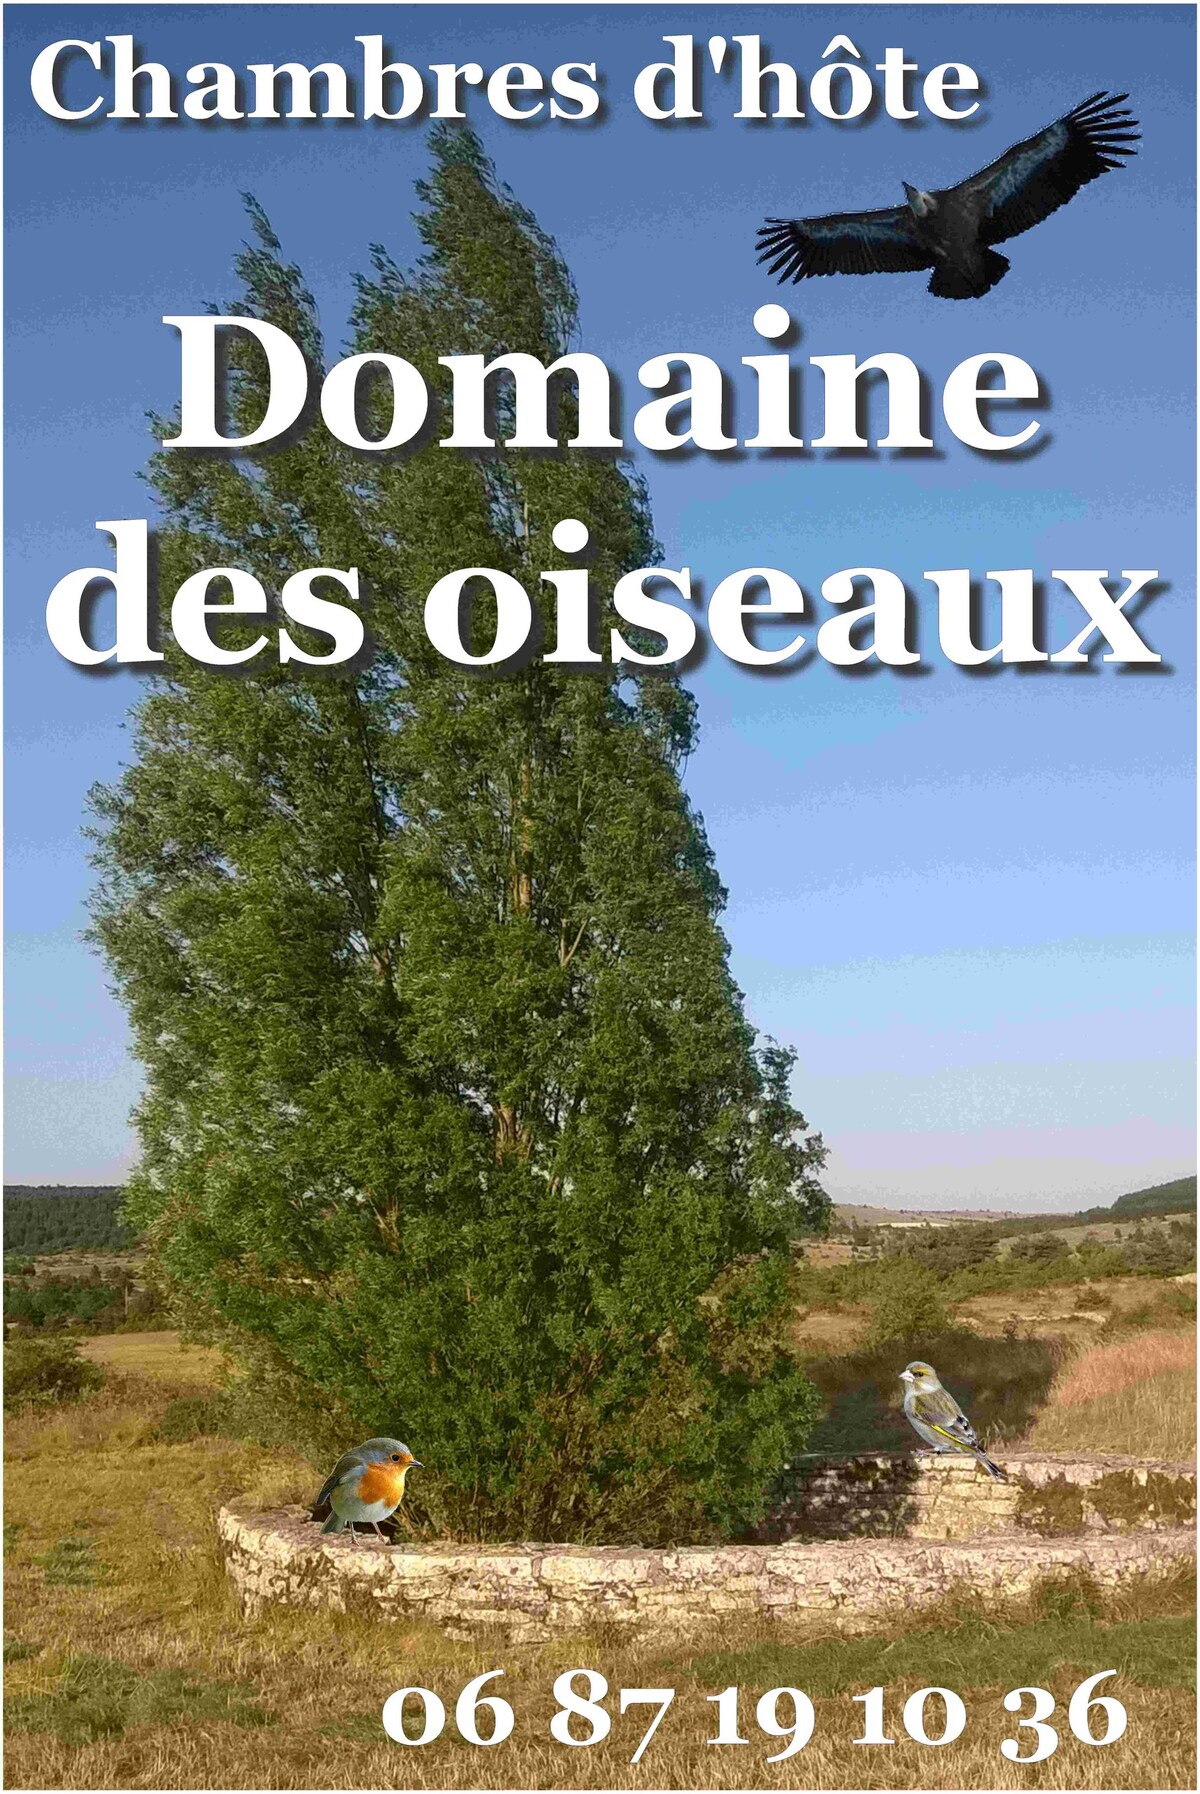 「Au Domaine des Oiseaux」。